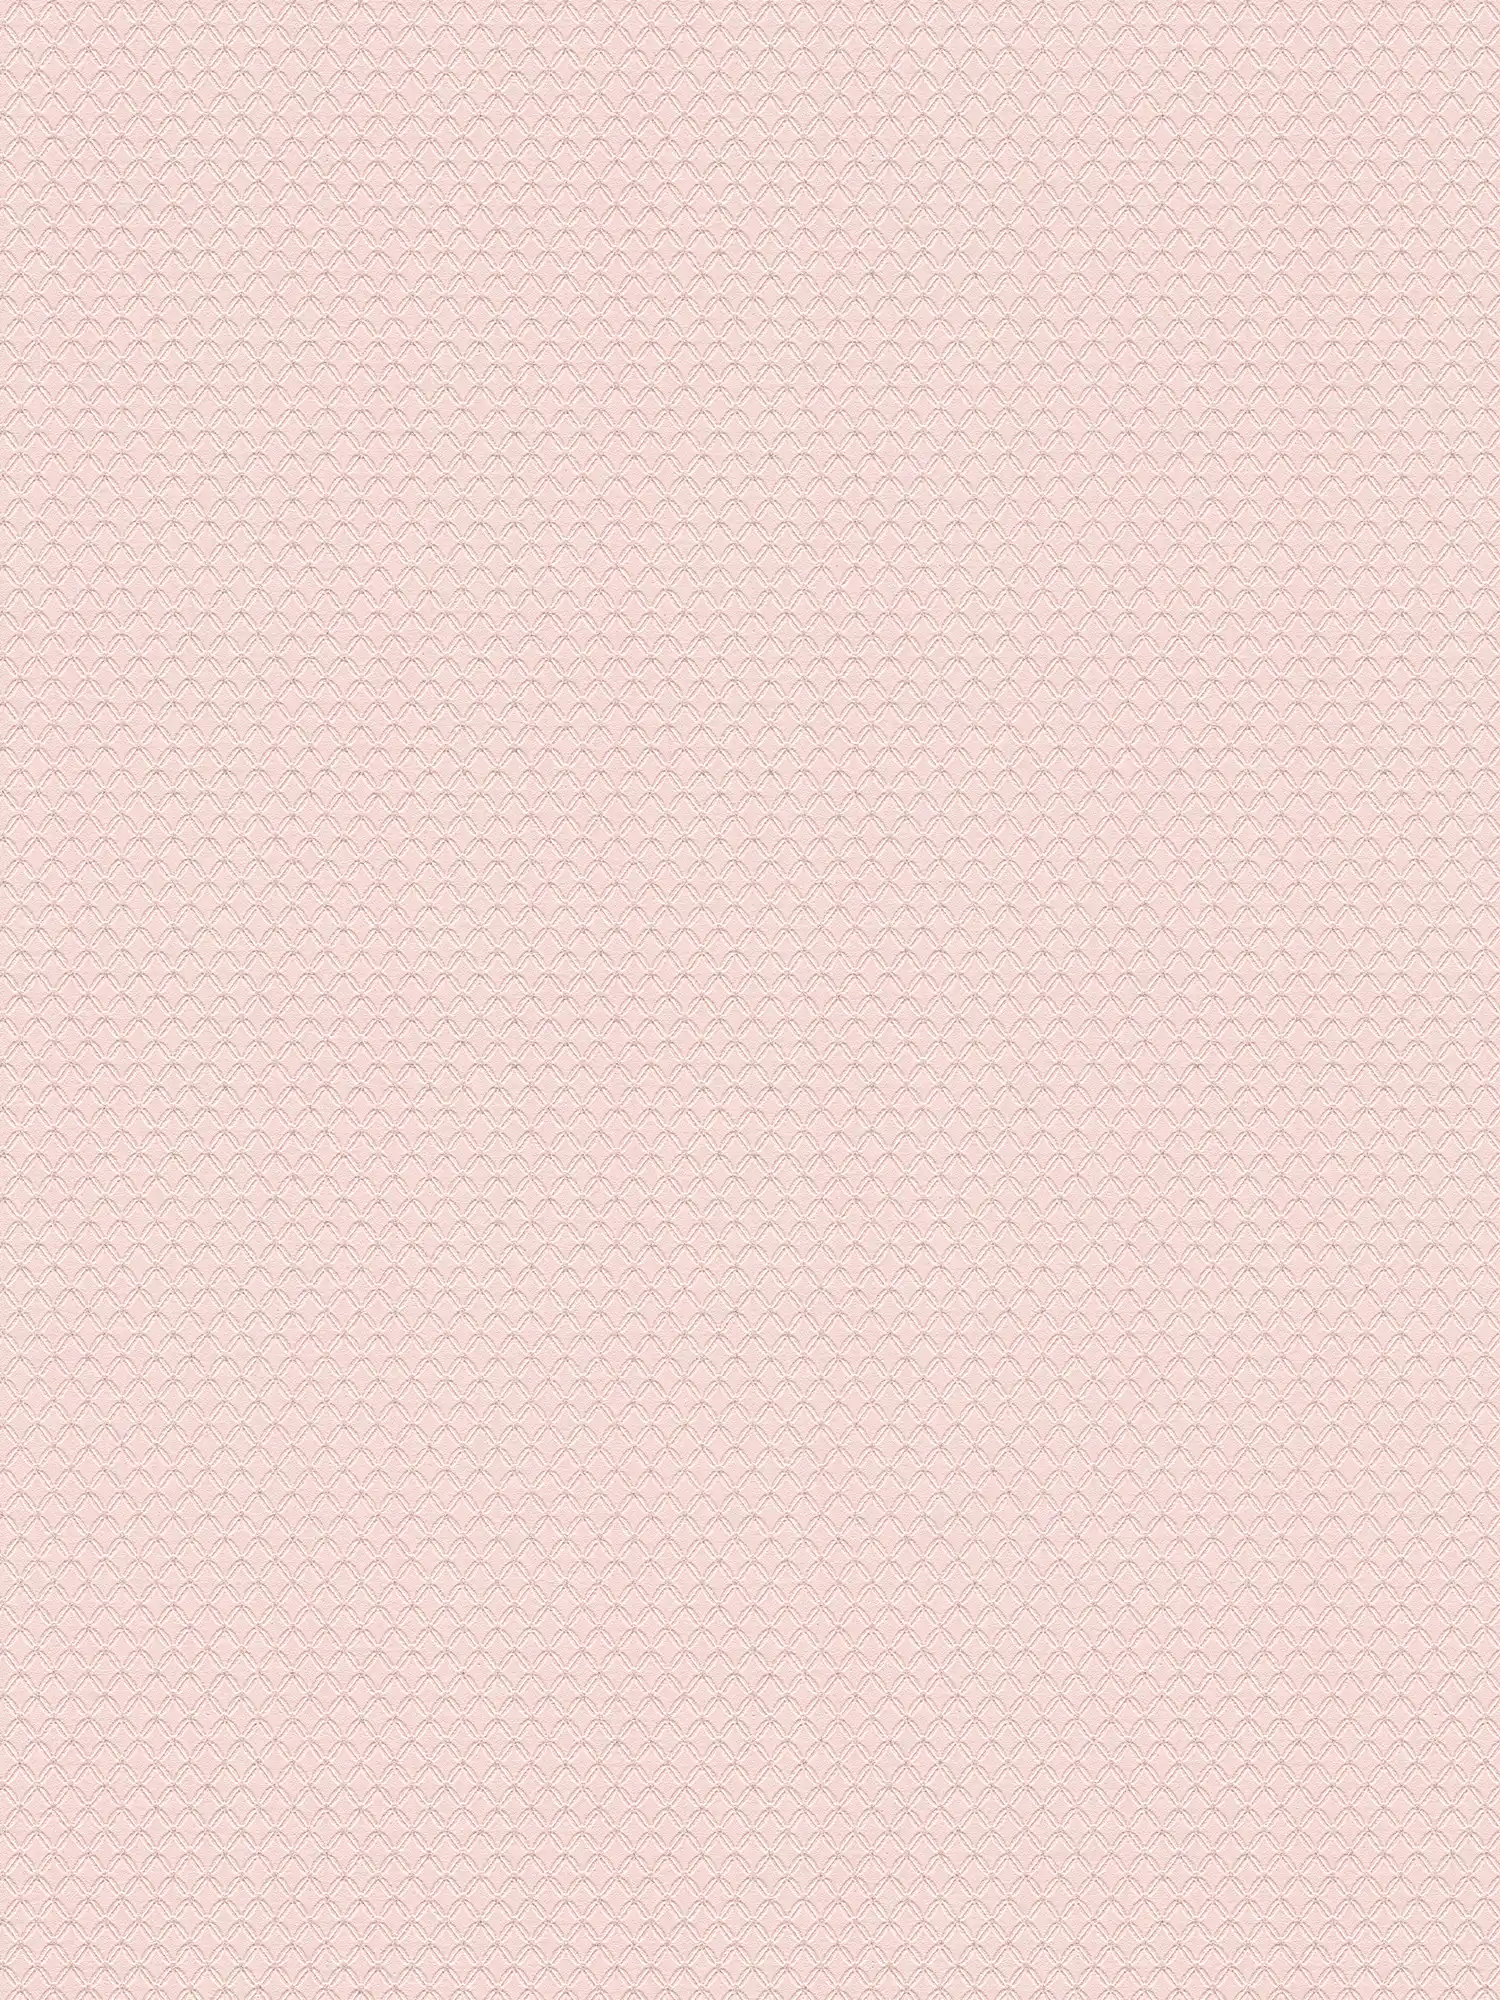 Carta da parati glitterata con struttura a rombi leggeri - rosa, viola
